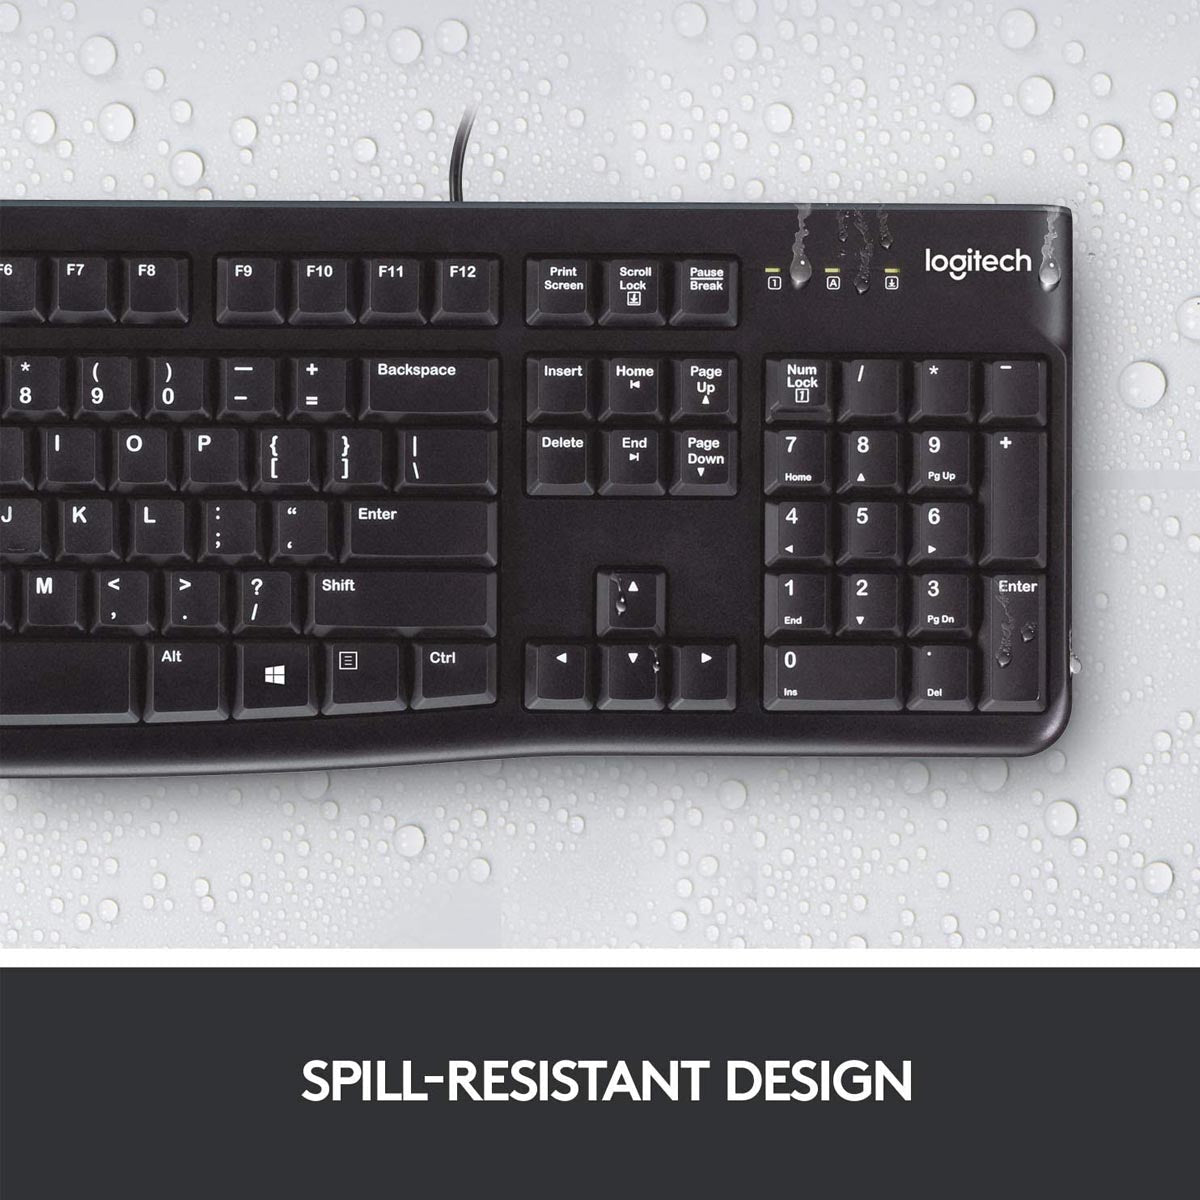 लॉजिटेक K120 वायर्ड कीबोर्ड स्पिल रेज़िस्टेंट डिज़ाइन और 10 मिलियन कीस्ट्रोक्स के साथ 